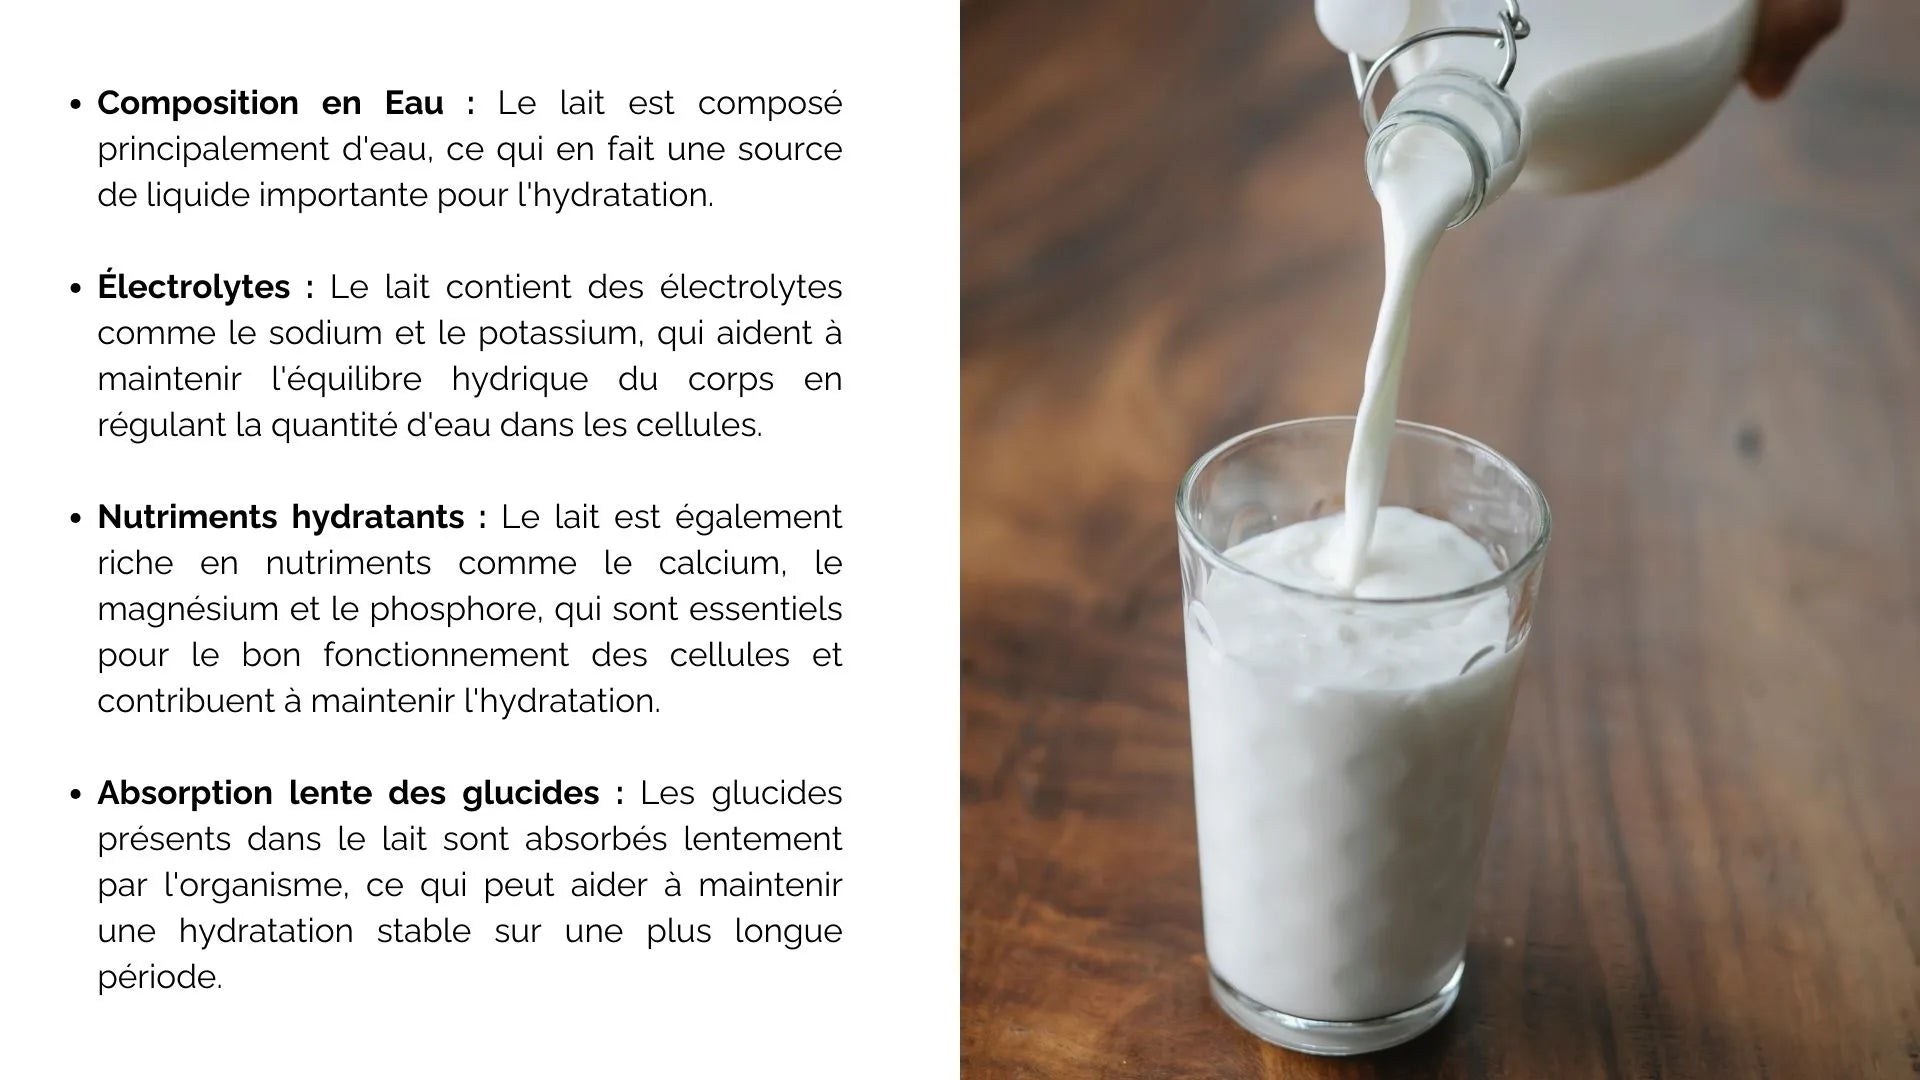 Composition en eau : Le lait est composé principalement d'eau, ce qui en fait une source de liquide importante pour l'hydratation. Électrolytes : Le lait contient des électrolytes comme le sodium et le potassium, qui aident à maintenir l'équilibre hydrique du corps en régulant la quantité d'eau dans les cellules. Nutriments hydratants : Le lait est également riche en nutriments comme le calcium, le magnésium et le phosphore, qui sont essentiels pour le bon fonctionnement des cellules et contribuent à maintenir l'hydratation. Absorption lente des glucides : Les glucides présents dans le lait sont absorbés lentement par l'organisme, ce qui peut aider à maintenir une hydratation stable sur une plus longue période. Complément alimentaire : Le lait peut être consommé en combinaison avec d'autres aliments, ce qui peut aider à reconstituer les réserves d'eau et d'électrolytes après un exercice physique ou une activité intense.